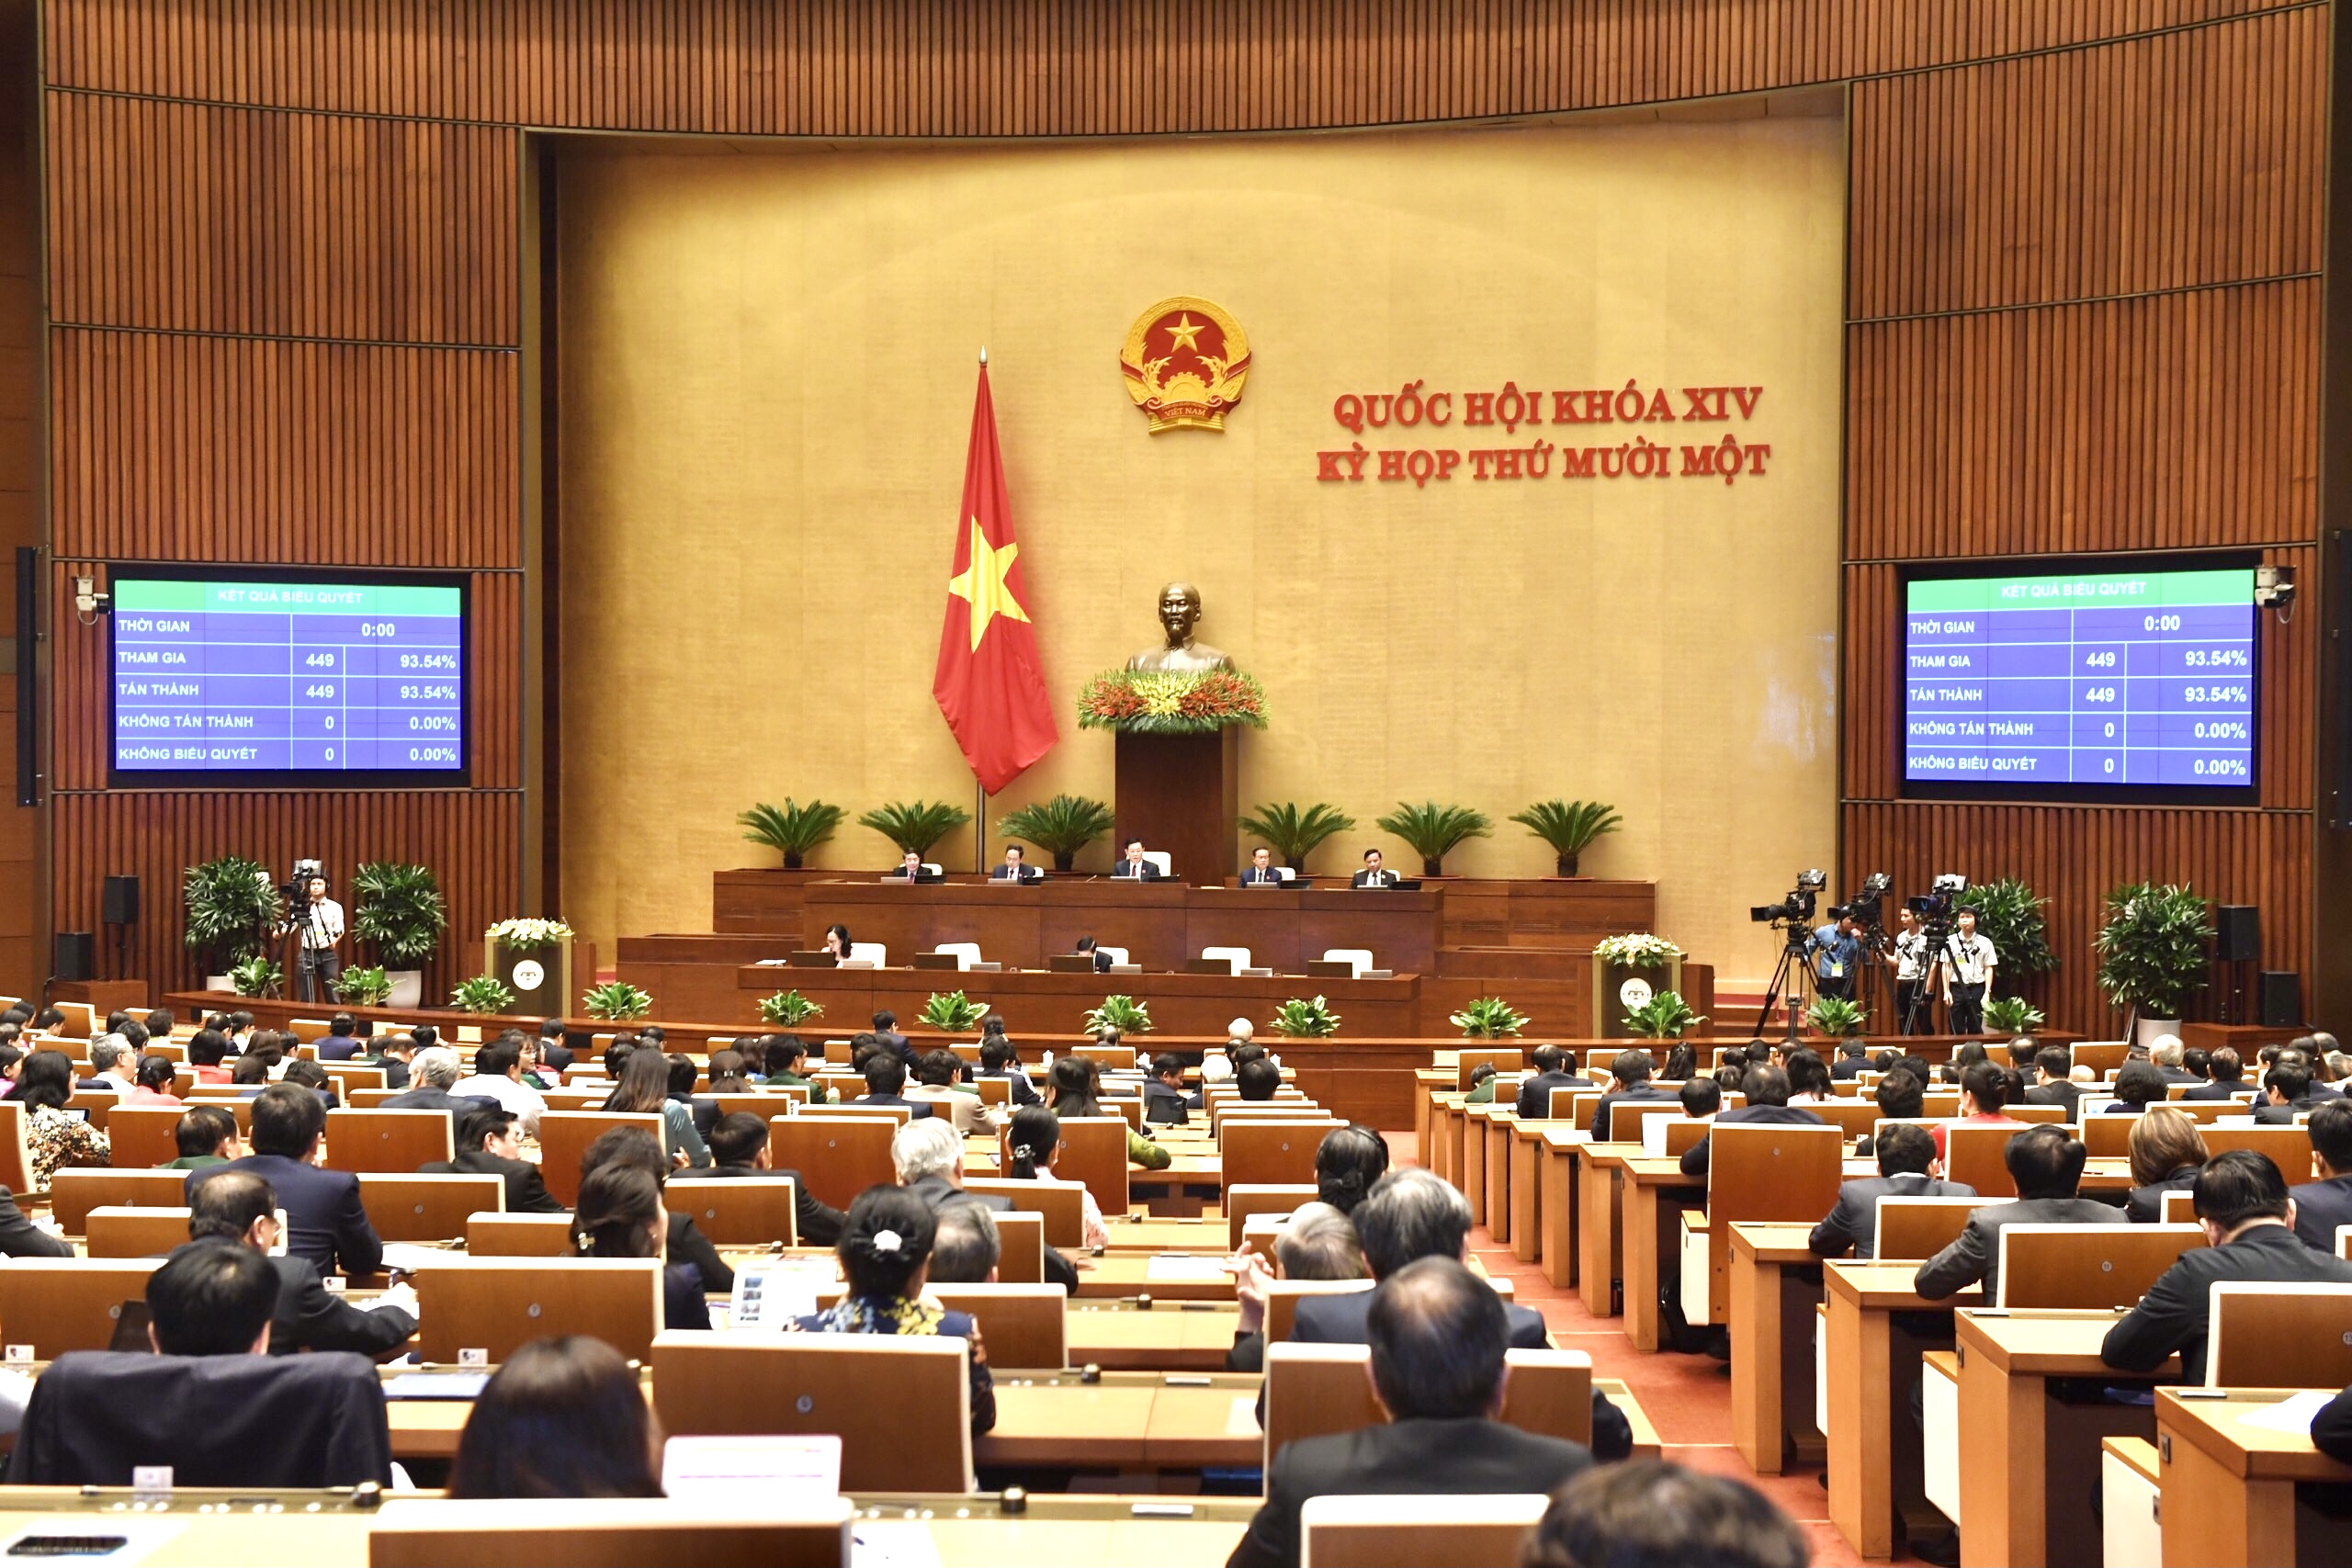 Sơ đồ bộ máy Nhà nước Việt Nam theo Hiến pháp mới nhất